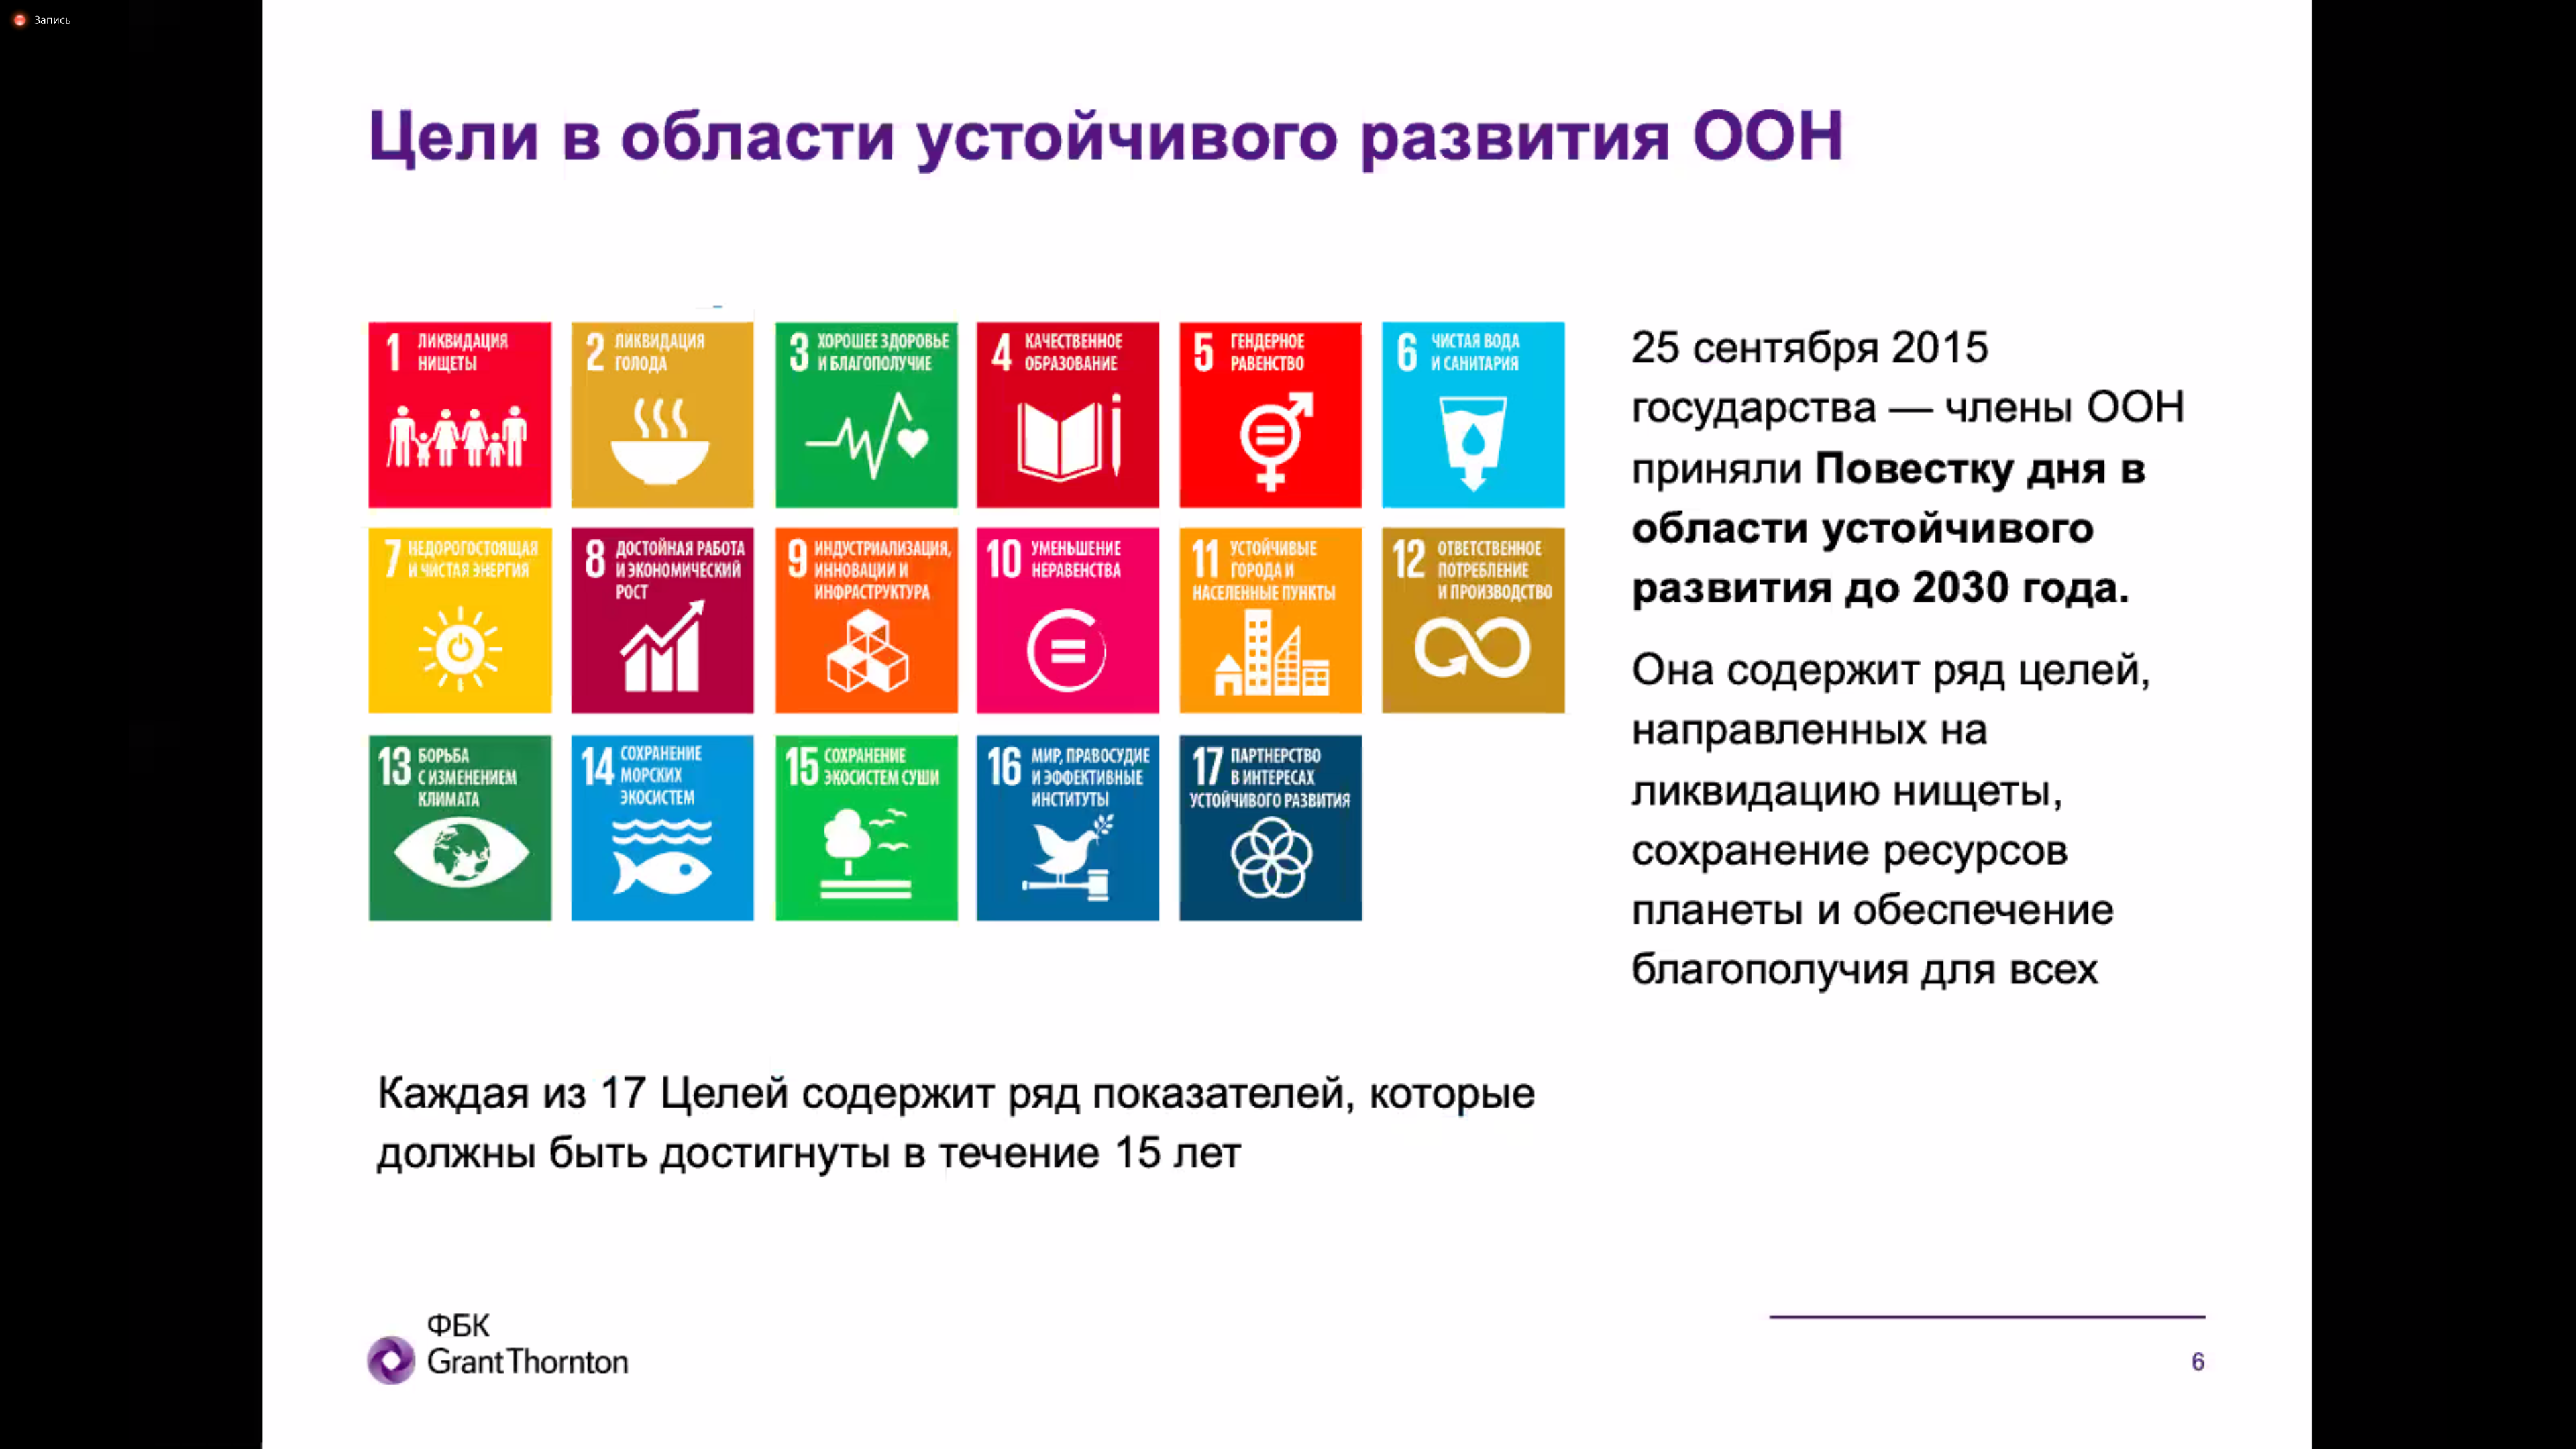 17 устойчивых целей оон. Цели устойчивого развития ООН 2015-2030. Цели устойчивого развития ООН до 2030. Цели развития ООН. 17 Целей устойчивого развития ООН.